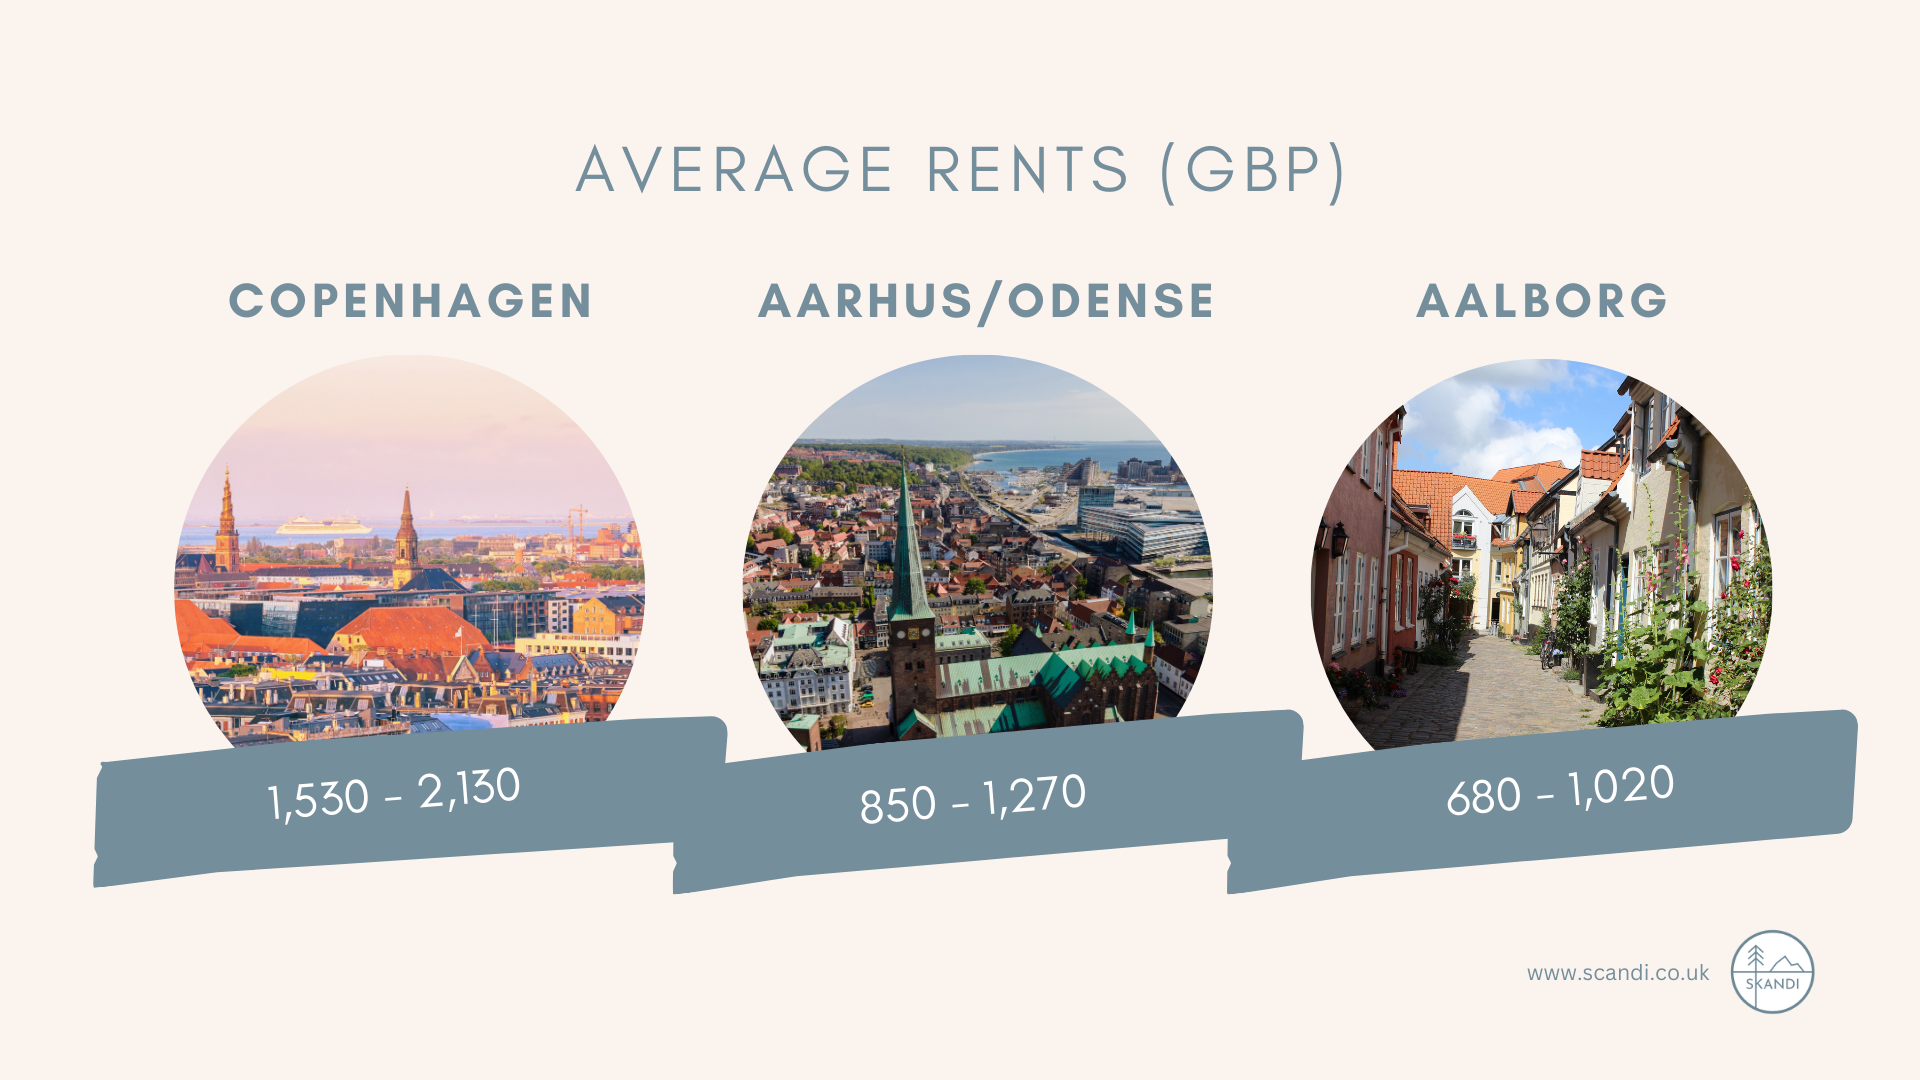 Average rents in denmark